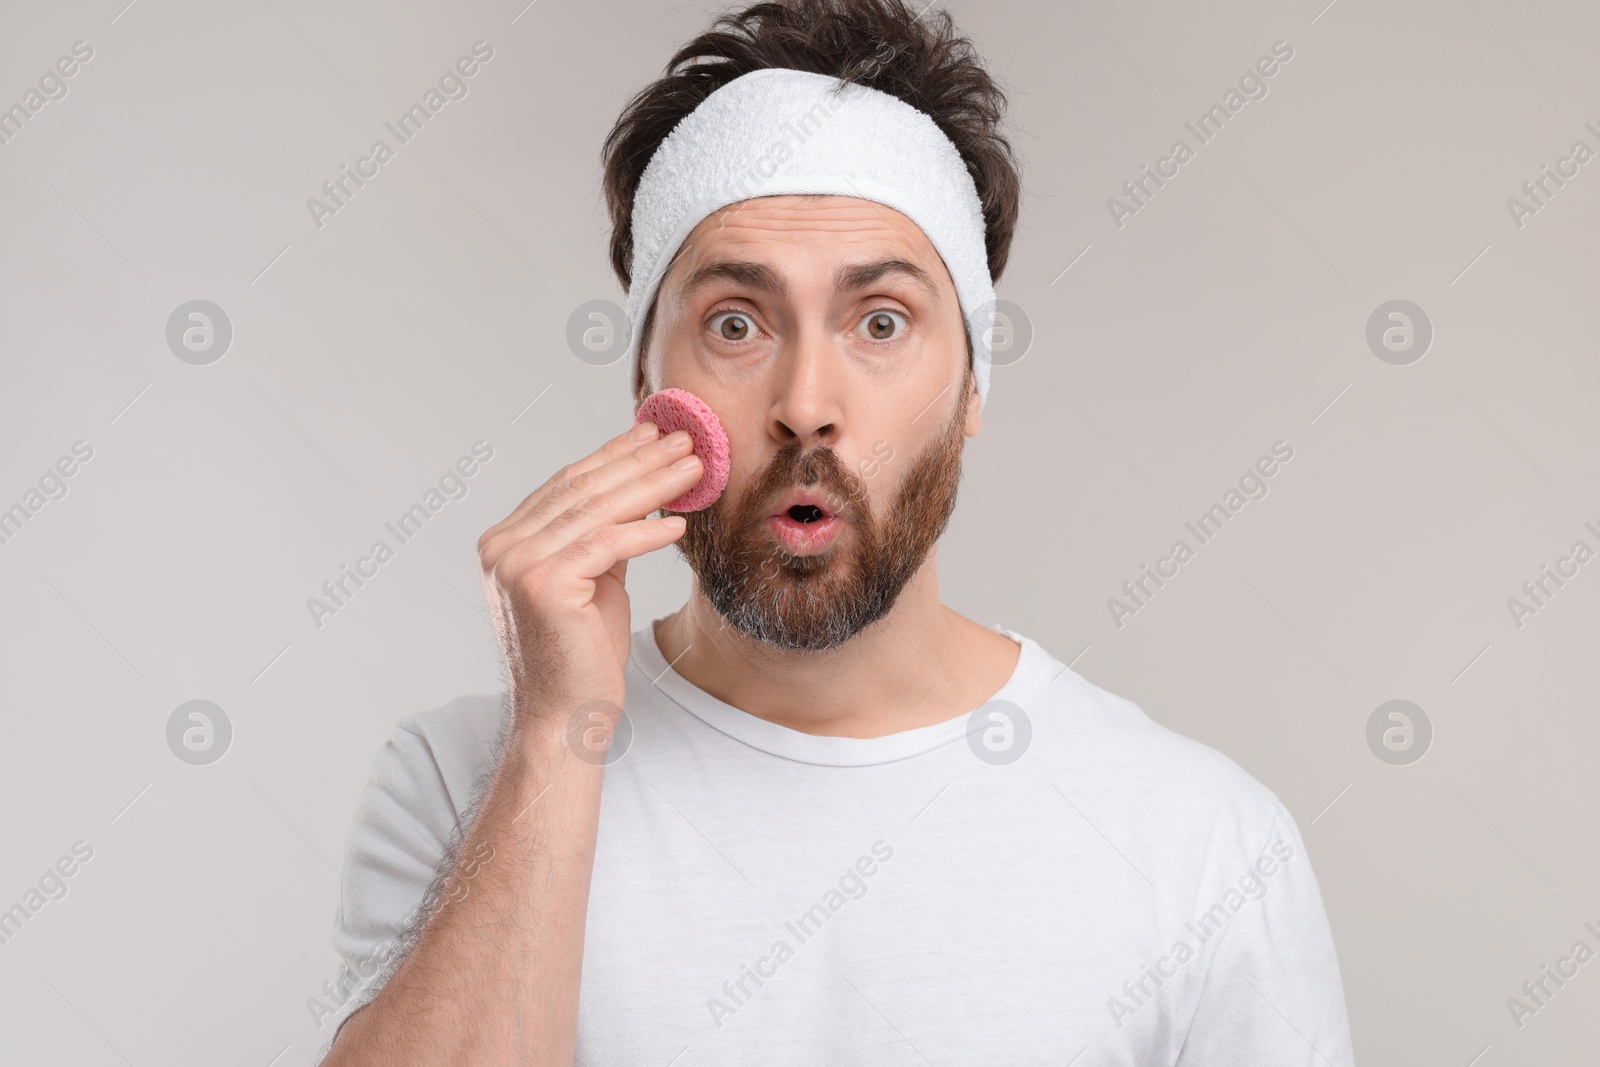 Photo of Emotional man with headband washing his face using sponge on light grey background